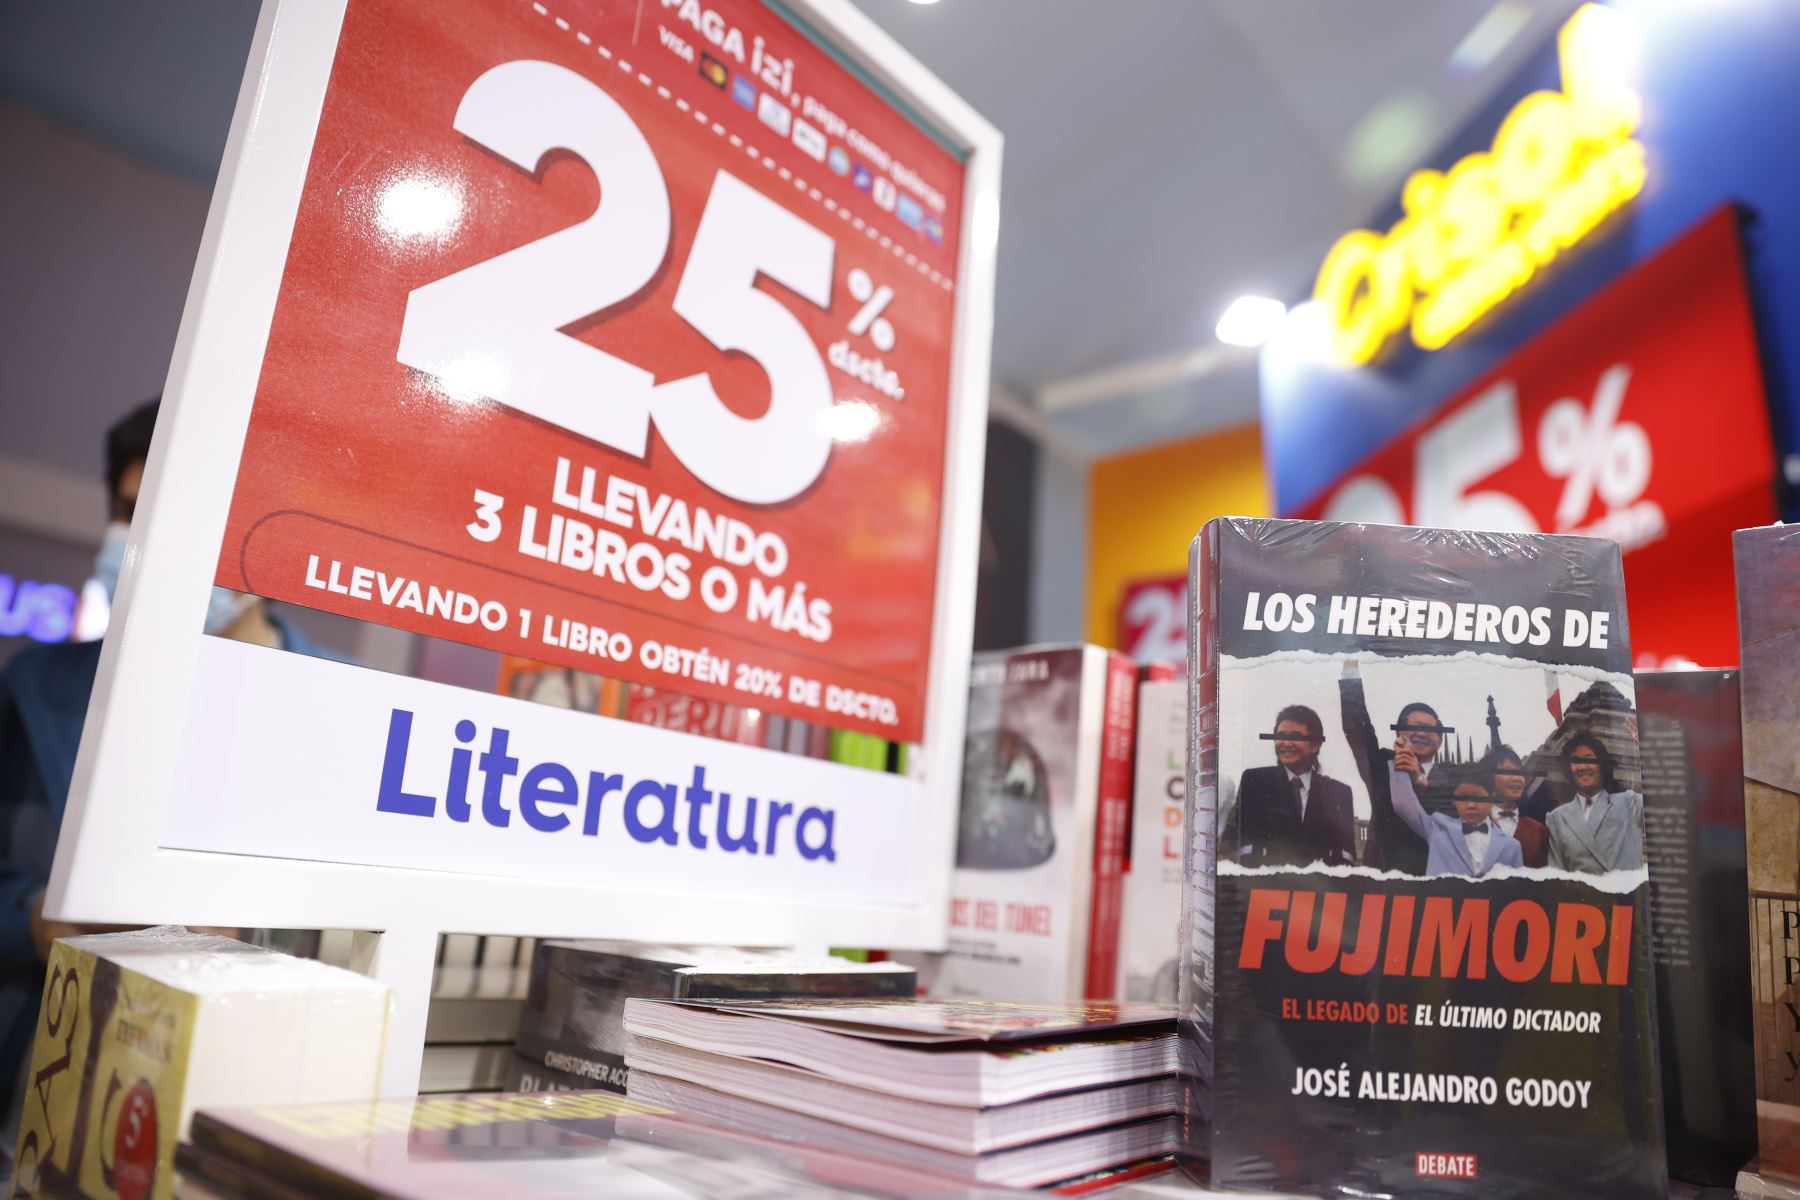 El stand de librerías Crisol tiene varios de los títulos más vendidos este año, entre ellos esta "Los herederos de Fujimori" de José Alejandro Godoy . Foto: ANDINA/Melina Mejía